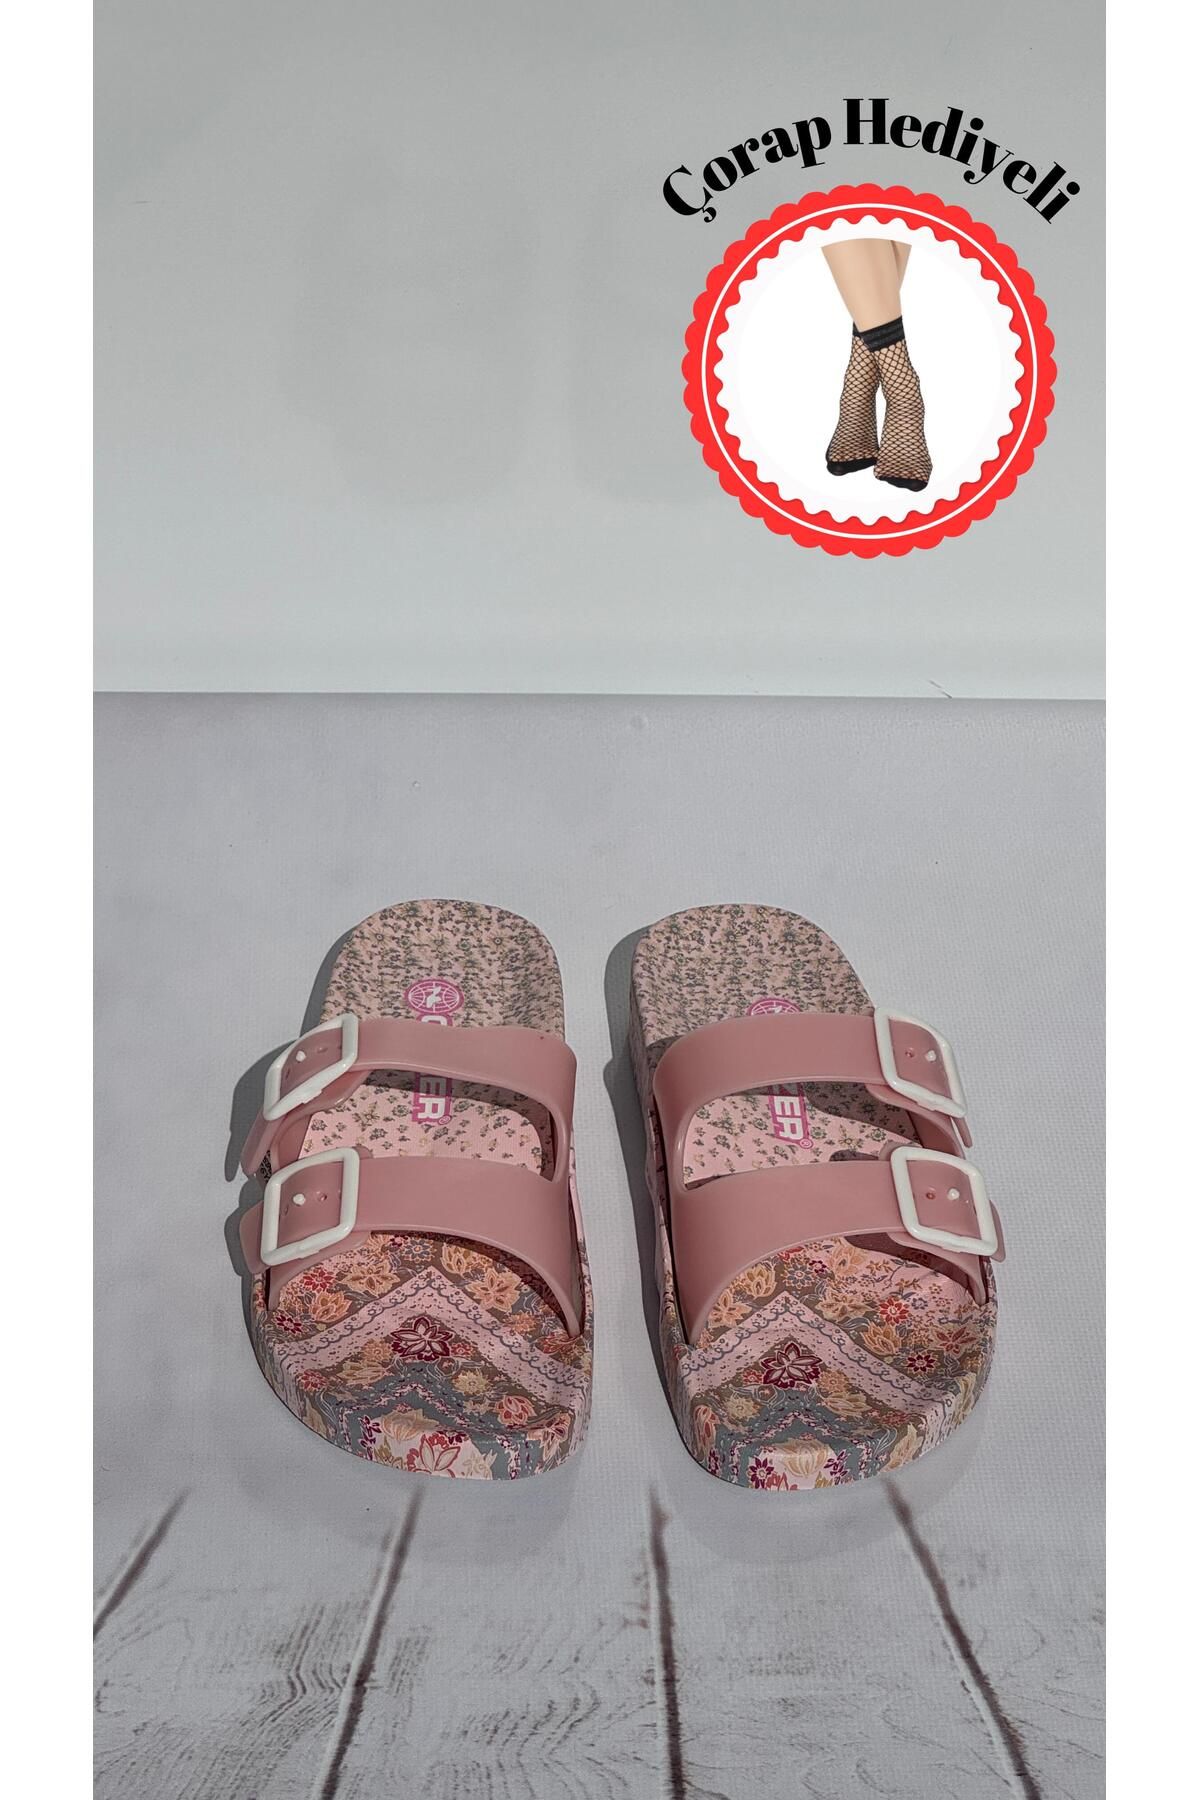 Gezer Anatomik Taban Kaydırmaz Plastik Ayarlanabilir Çift Tokalı Kadın Terlik ( Çorap Hediyeli )